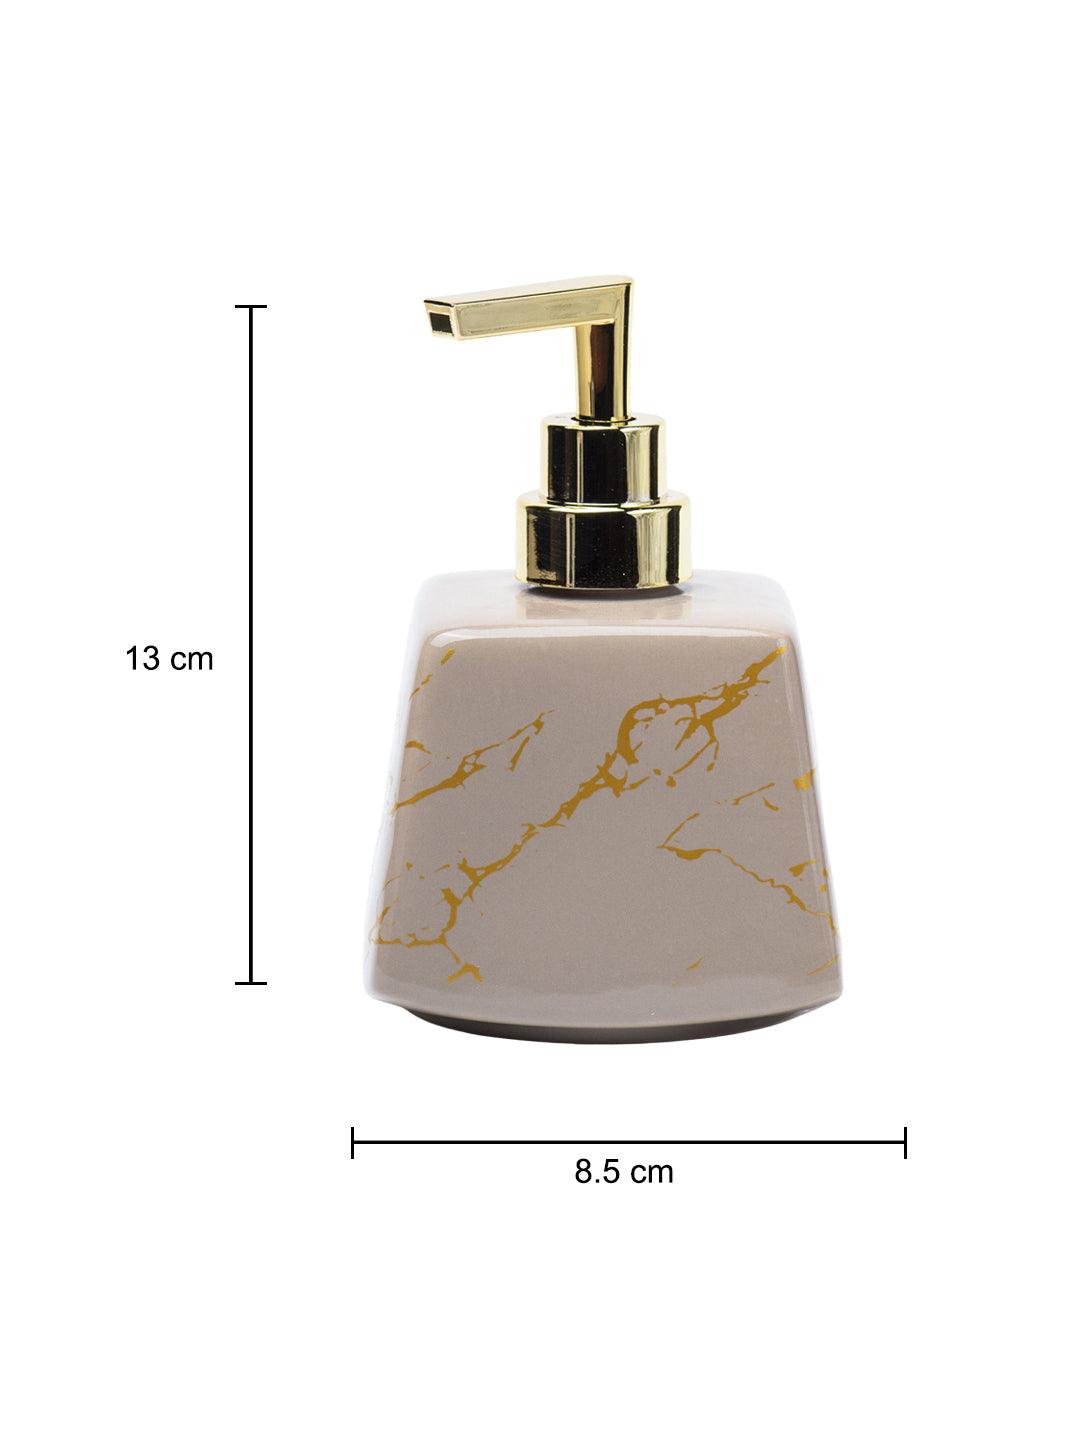 Brown Ceramic Soap Dispenser - Stone Finish, Bath Accessories - 5